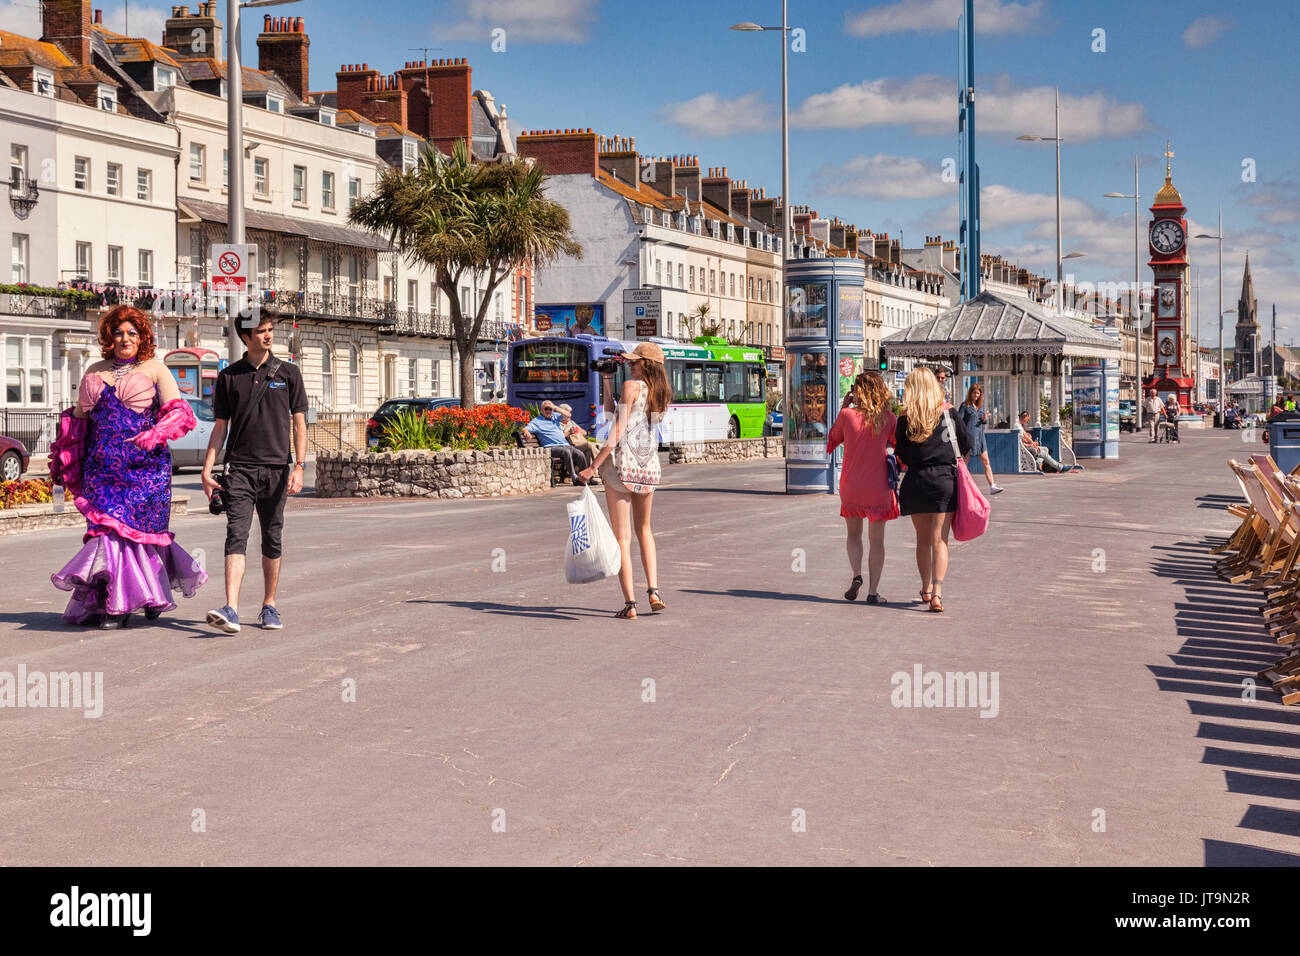 2 Juillet 2017 : Weymouth, Dorset, England, UK - Certains des sites touristiques de Weymouth, Promenade, y compris une pantomime dame, quelques jolies filles et la célèbre Ju Banque D'Images